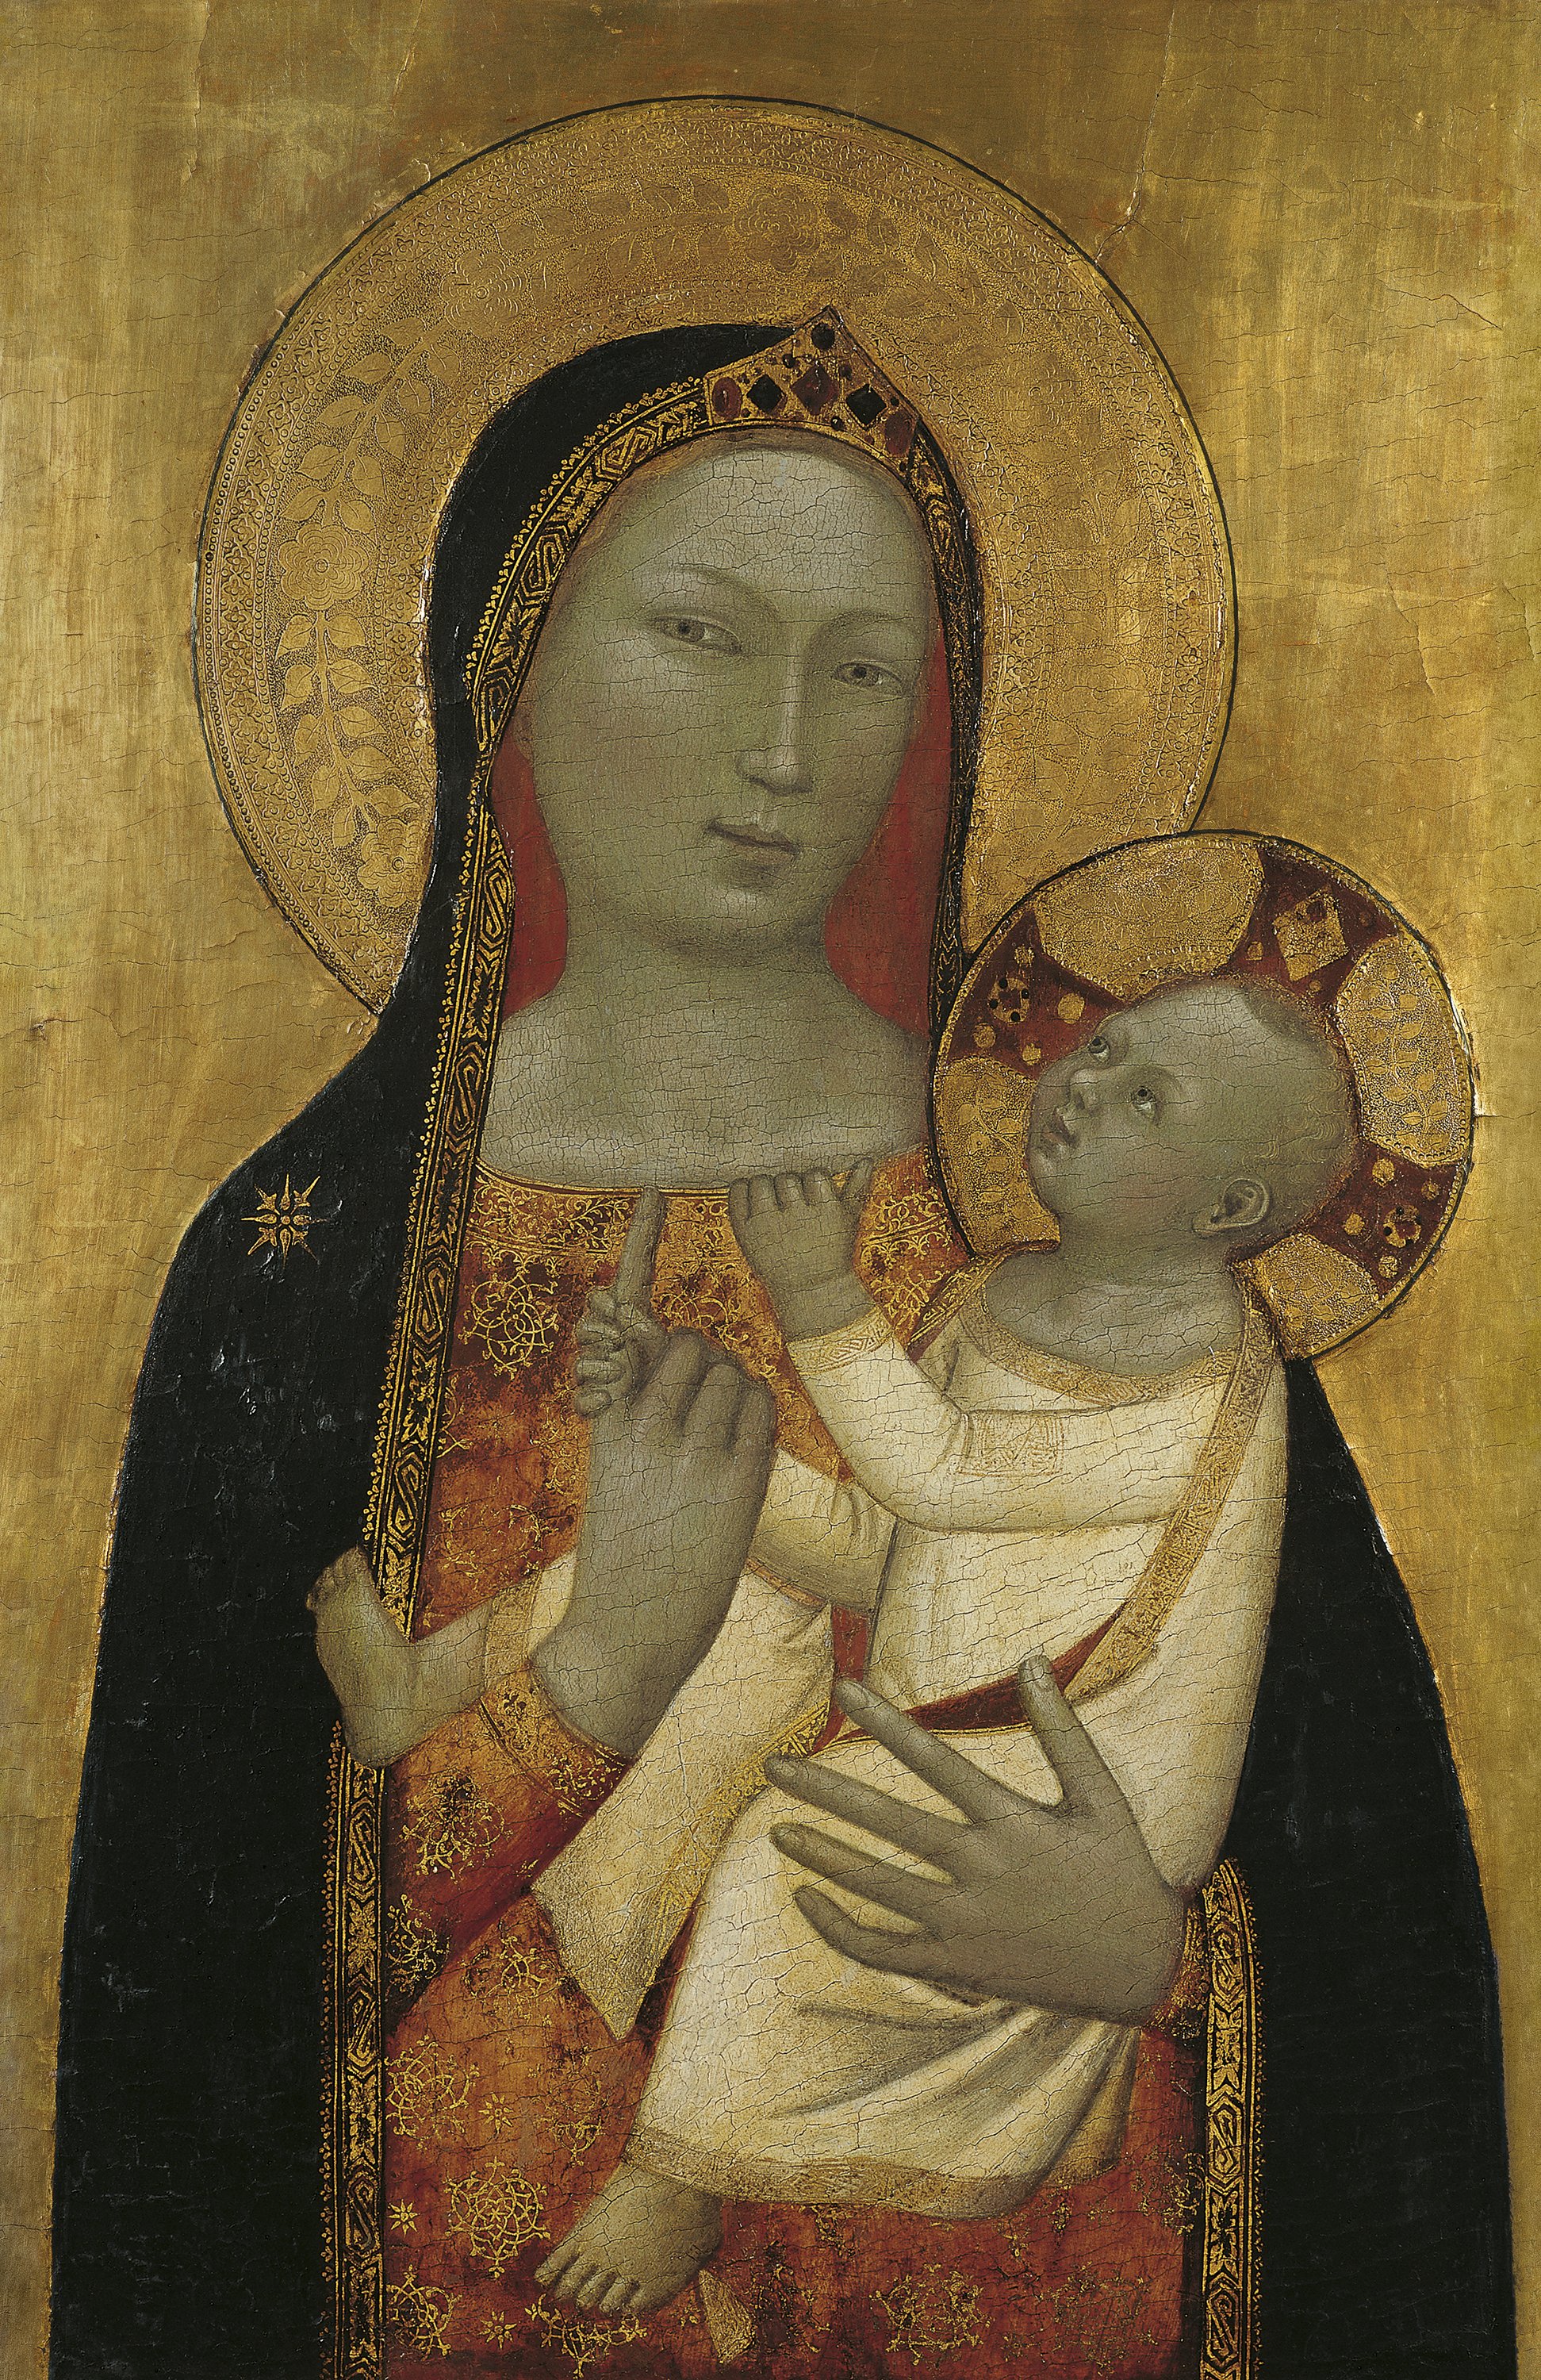 The Virgin and Child . La Virgen con el Niño, c. 1340-1345